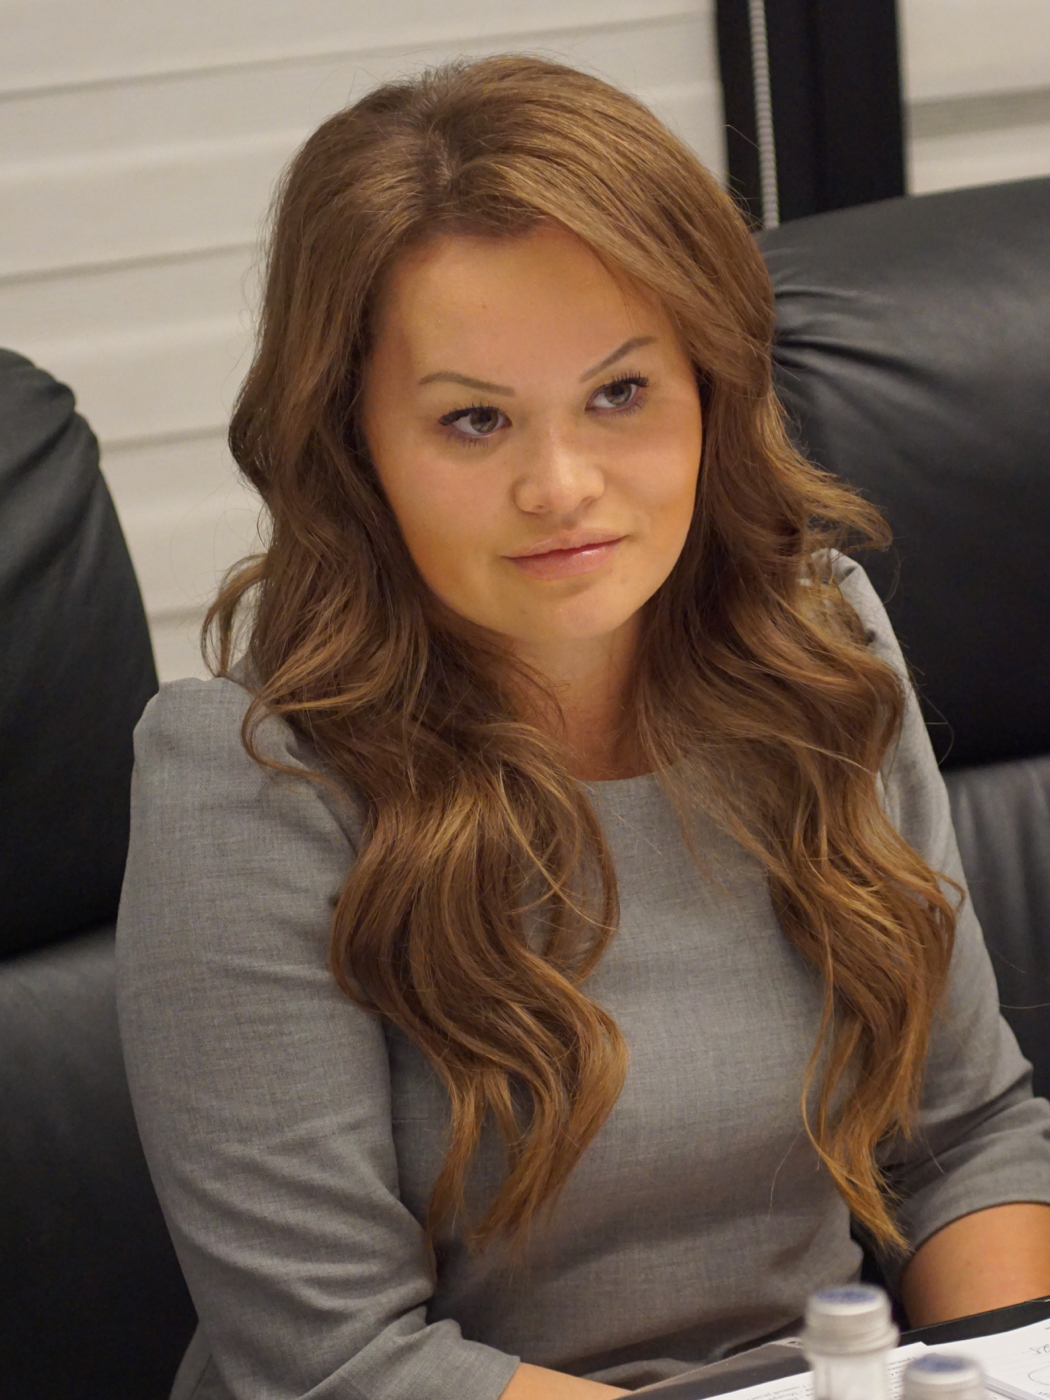 Батталова Мария Абаевна — Управляющий филиалом Абсолют Банка в Санкт-Петербурге